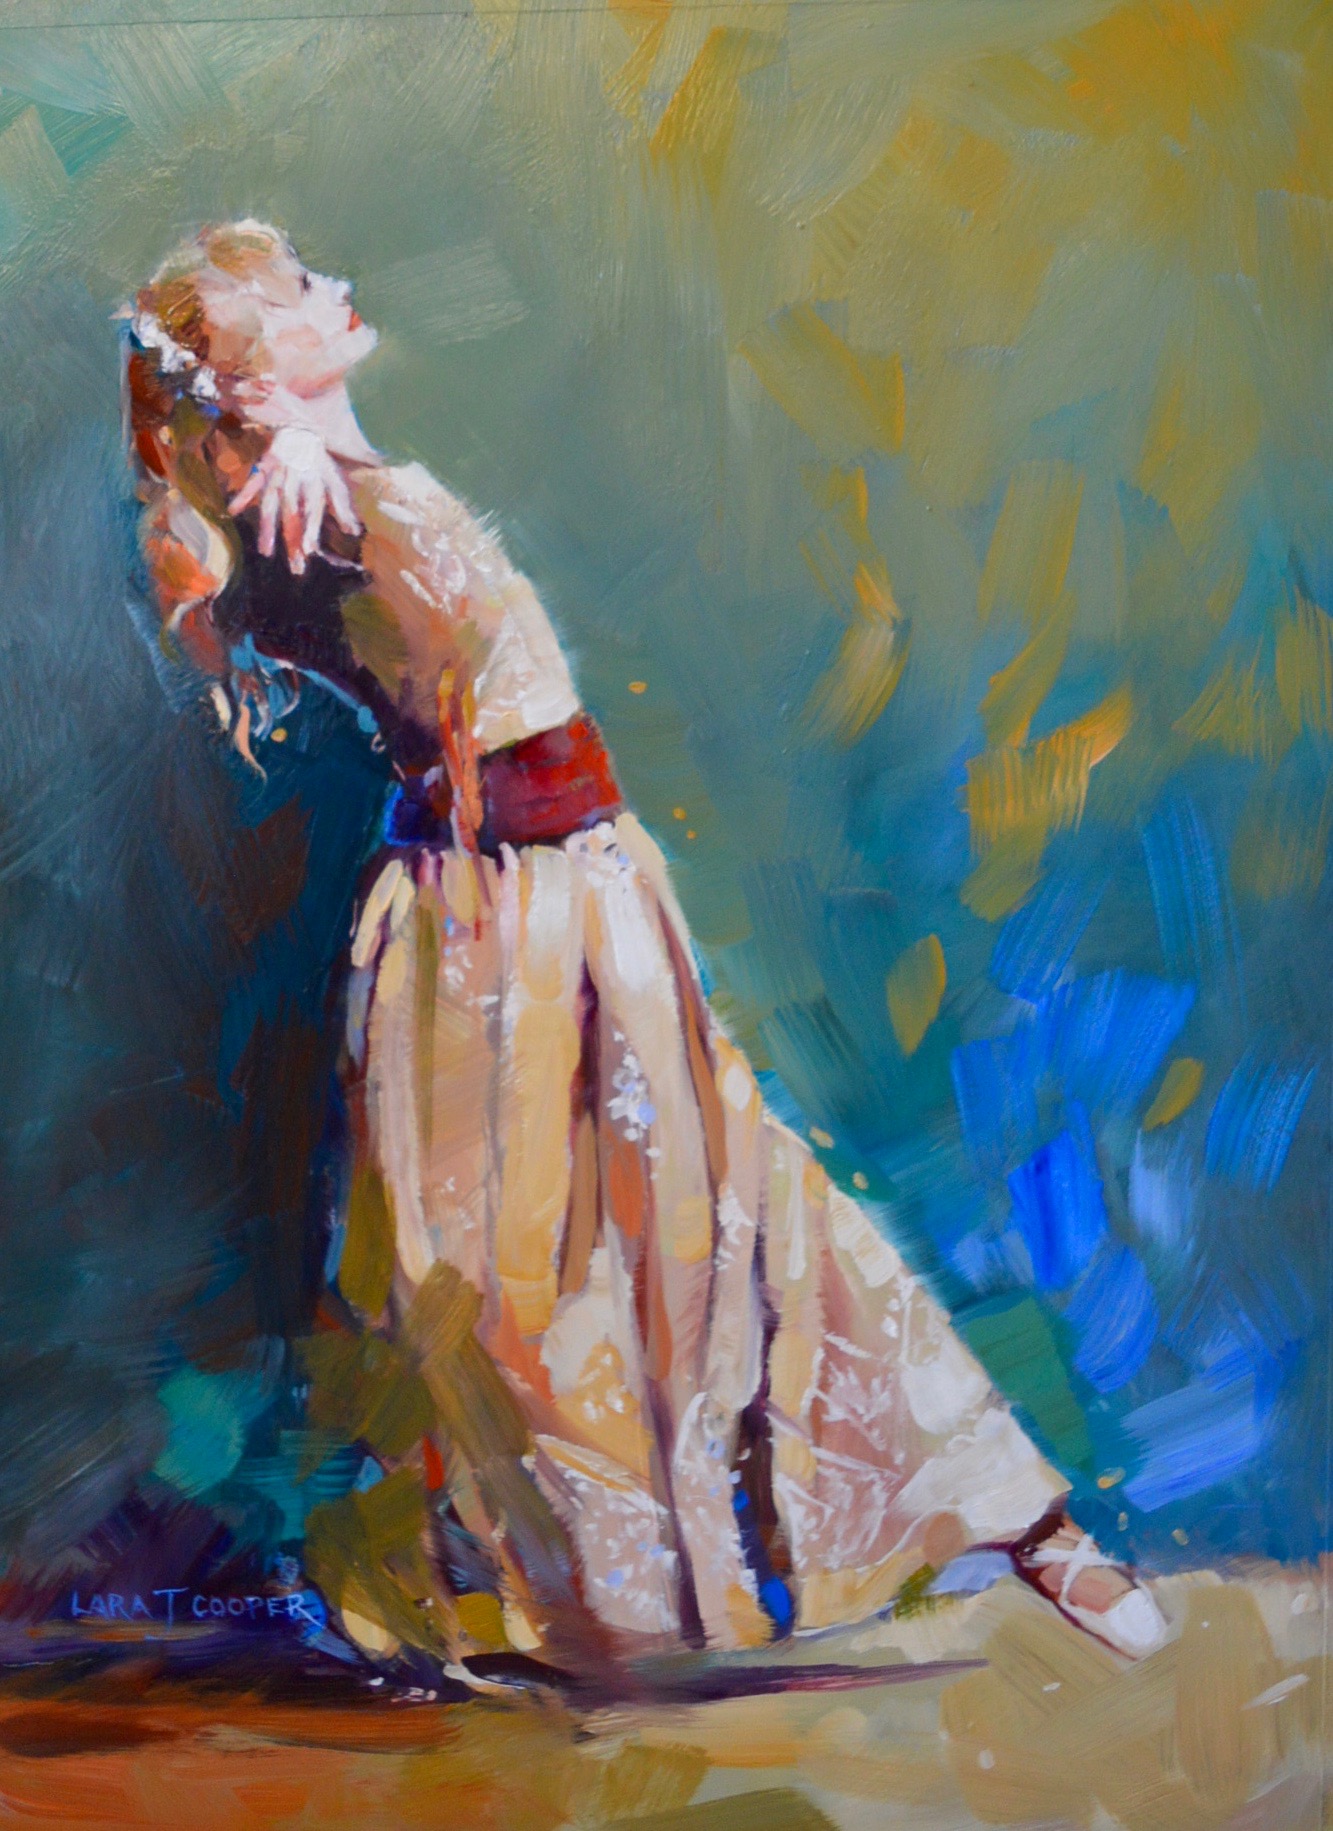 dancer, blue, red, green, oil painting, dance, australian artist, queensland artist